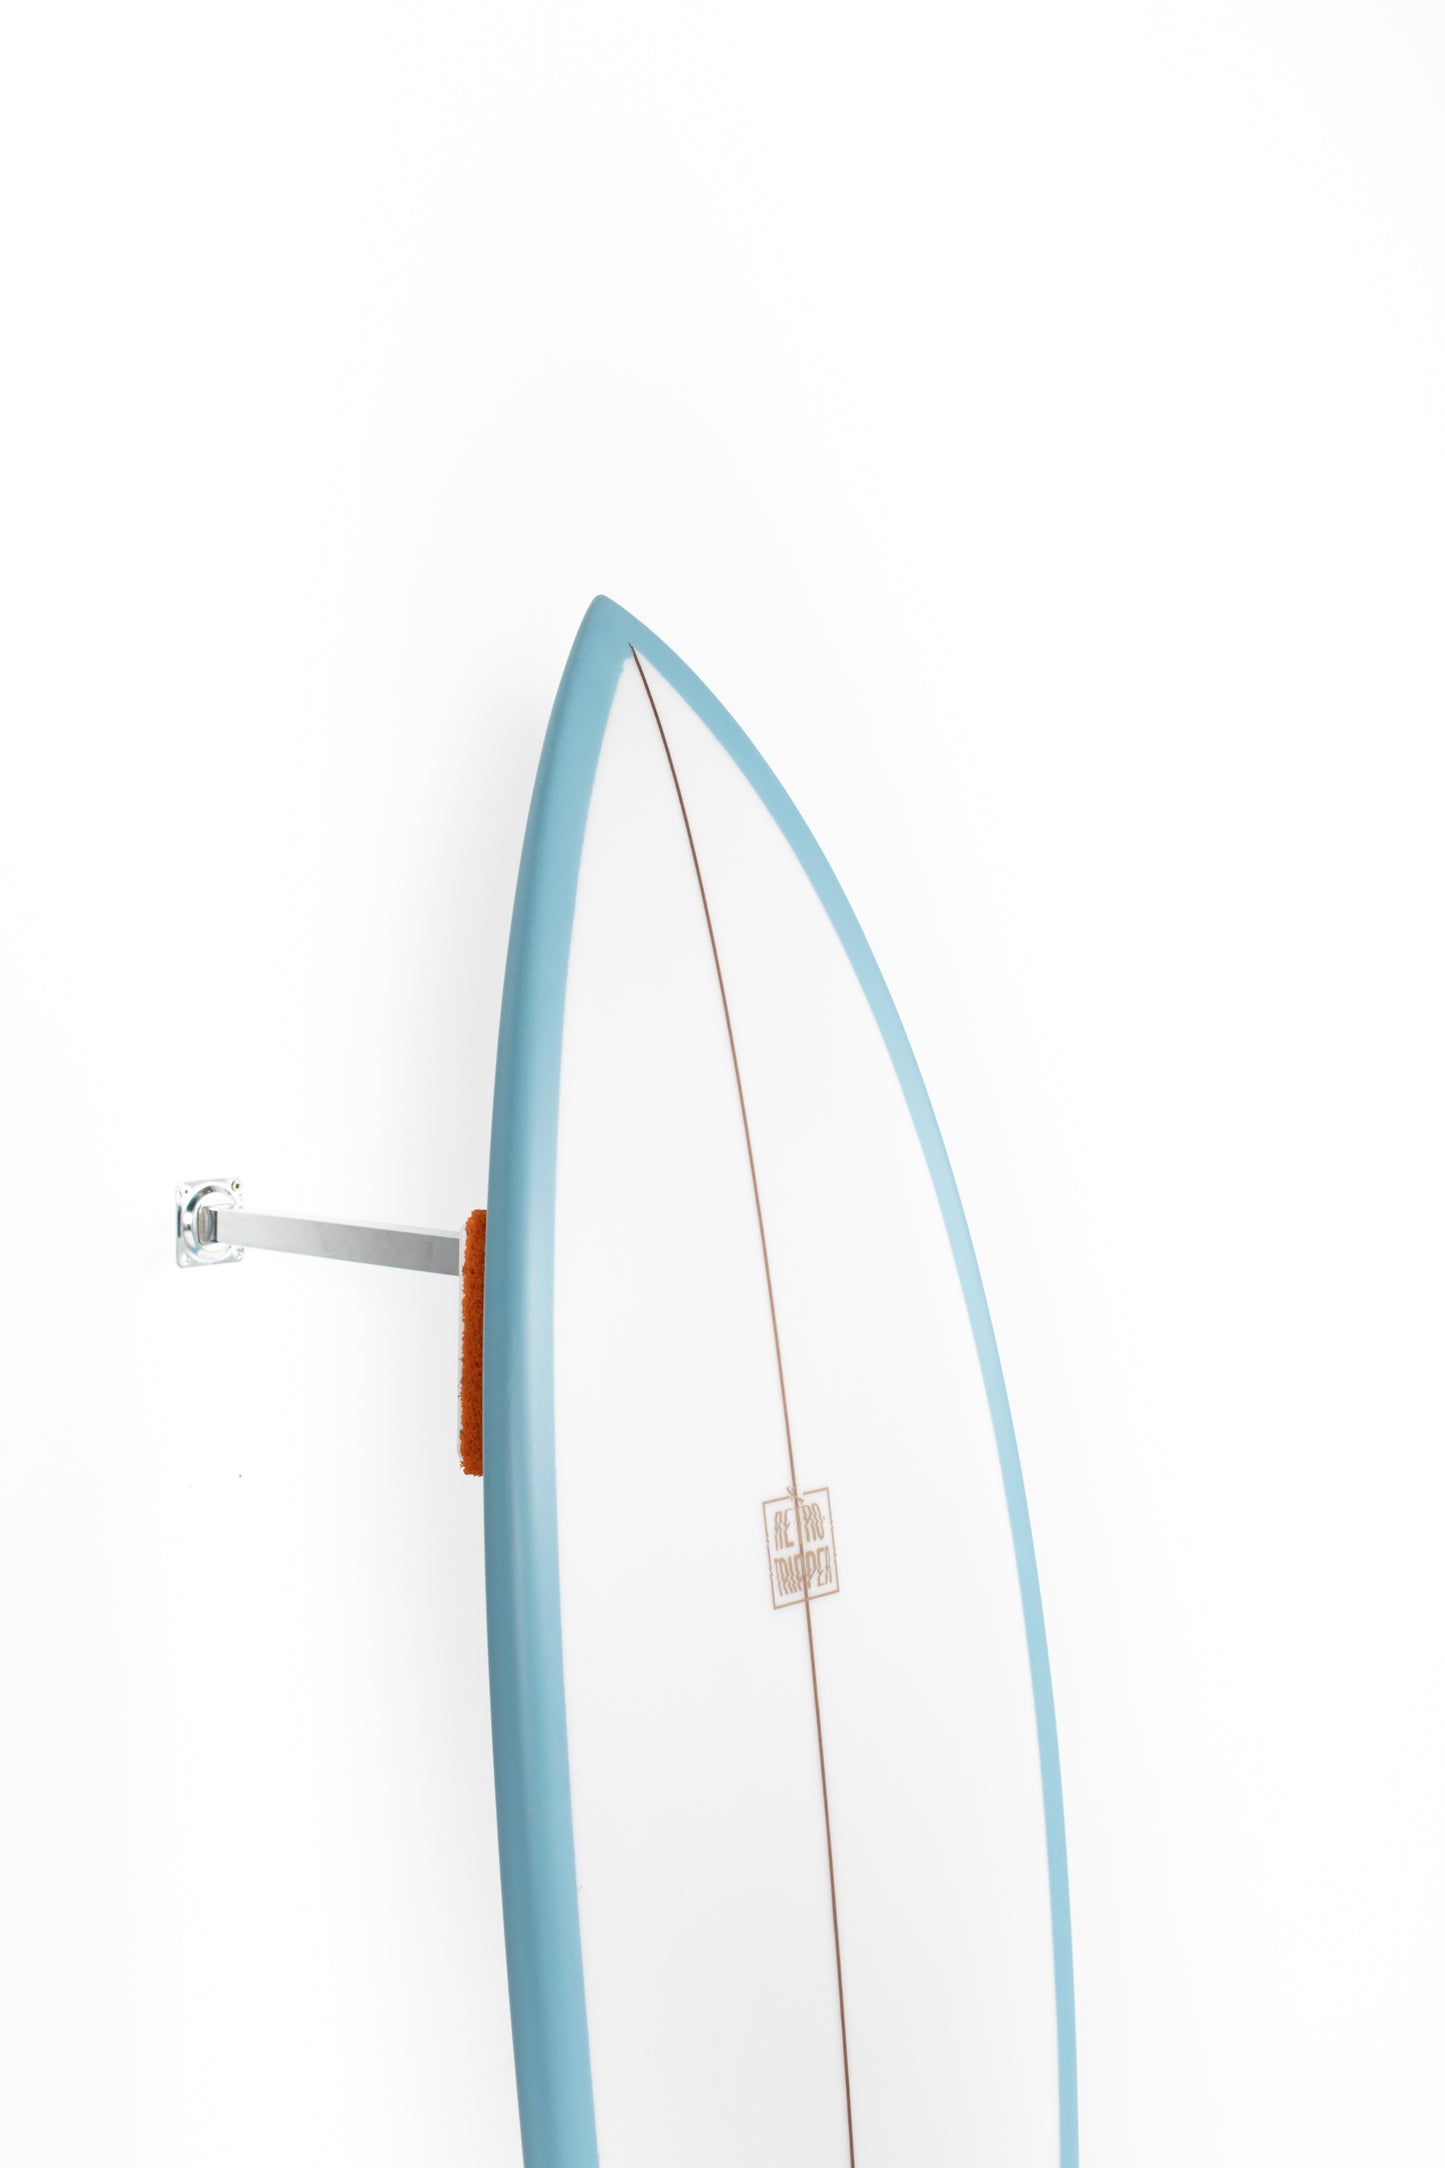 
                  
                    Pukas Surf Shop - Lost Surfboard - RETRO TRIPPER by Matt Biolos - 5'6" x 19.5 x 2.37 x 28.5L - MH14860
                  
                